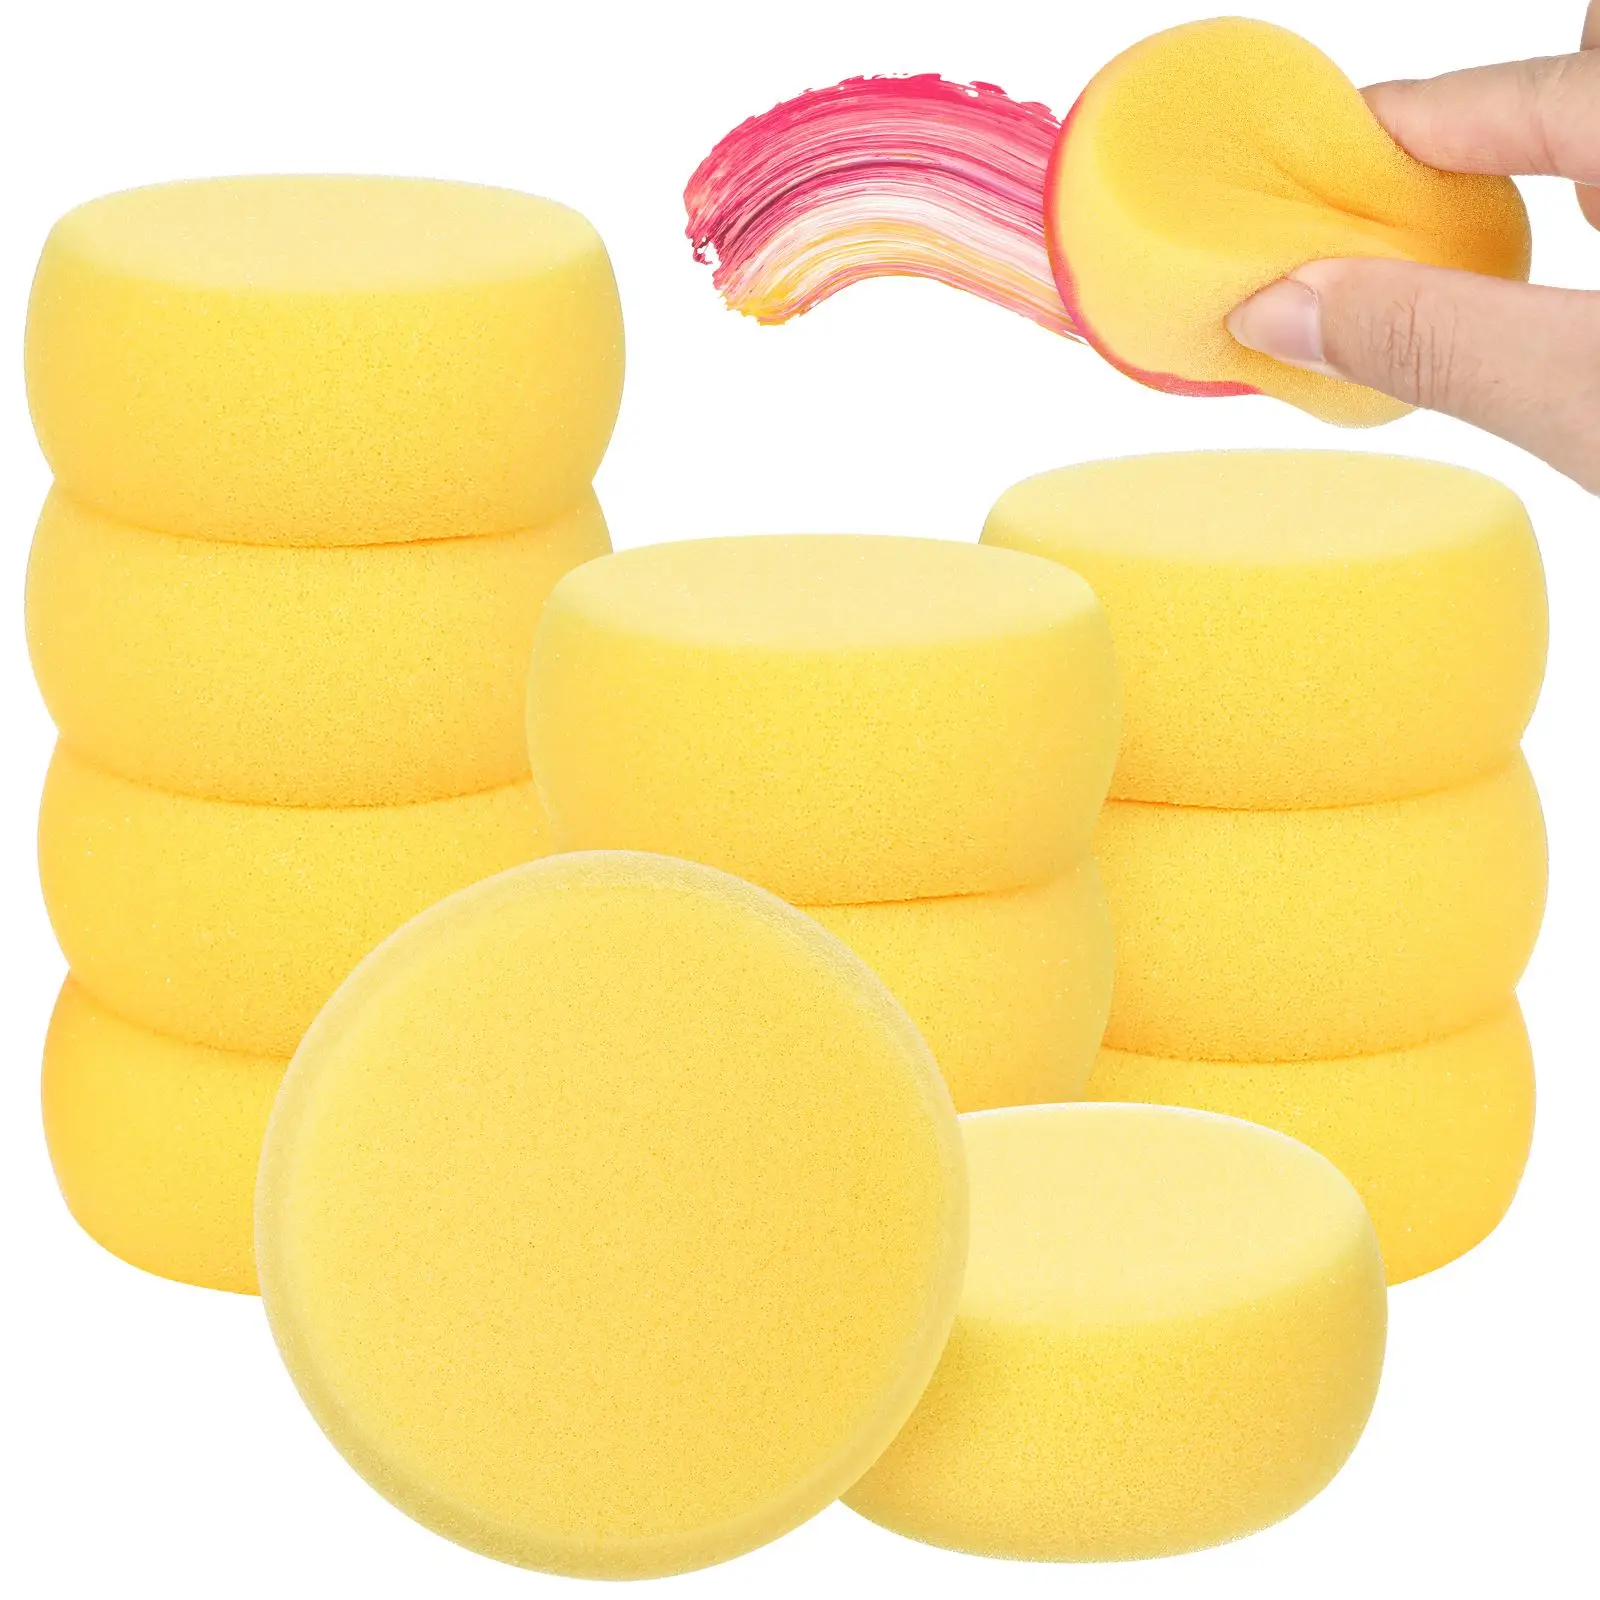 12pcs Small round Sponges Bath Sponge Colorful Multi-purpose Practical  Artist